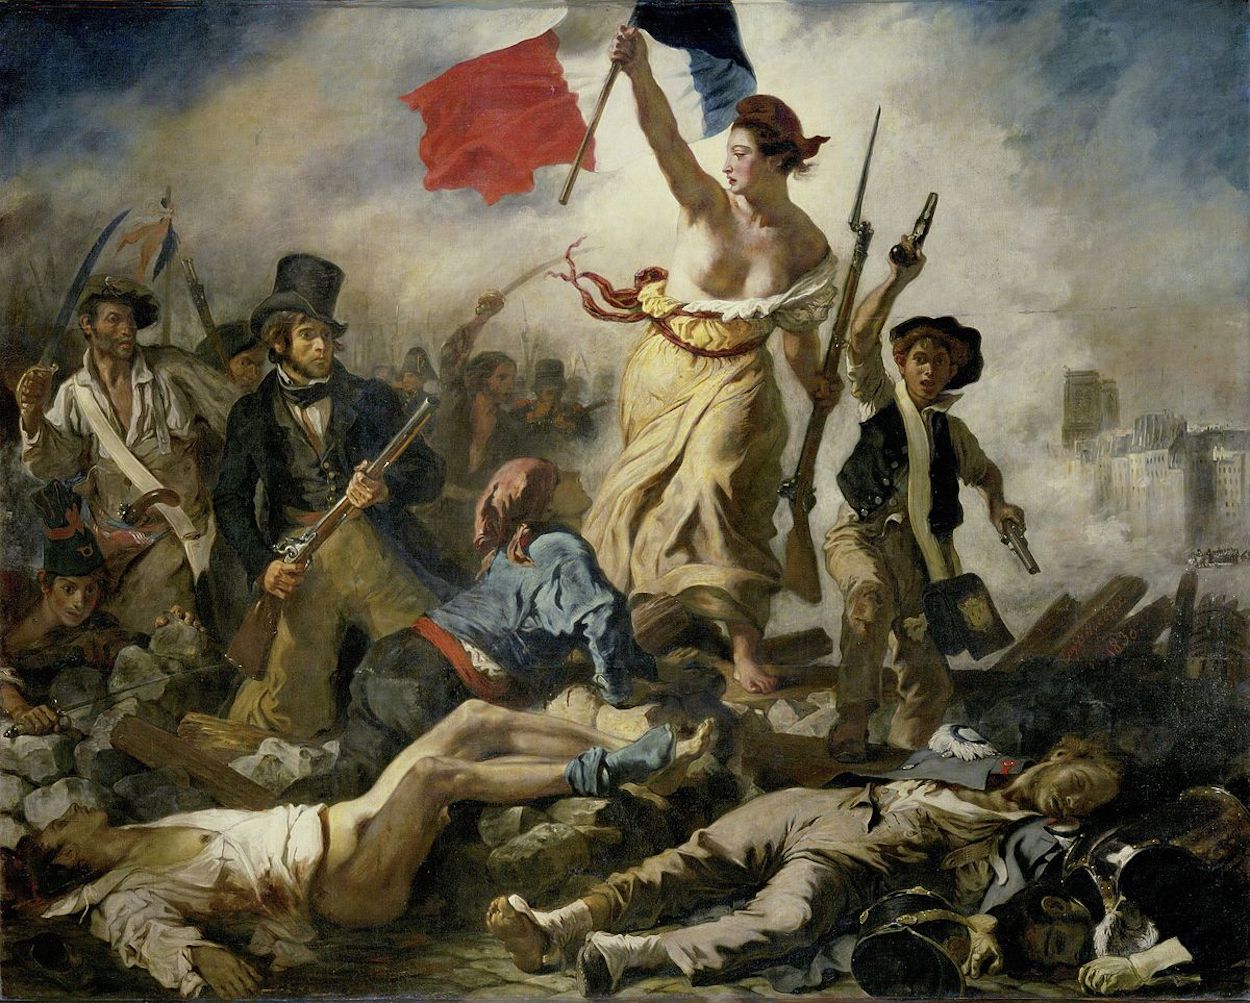 Halka Yol Gösteren Özgürlük by Eugène Delacroix - 1830 - 260 cm x 325 cm Musée du Louvre